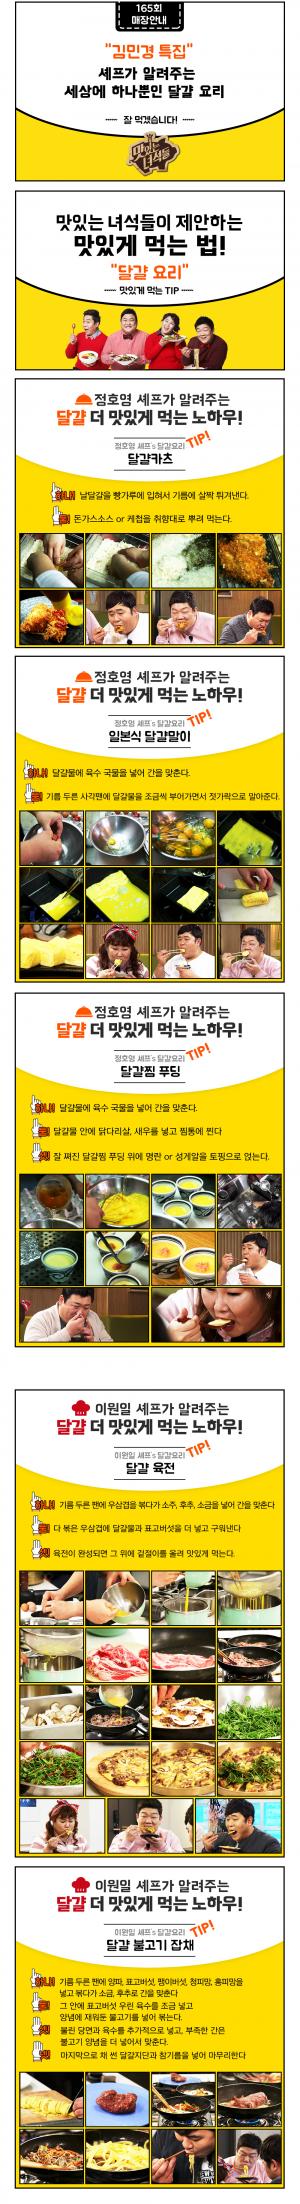 ‘맛있는 녀석들’ 김민경 달걀요리 특집, 정호영 달걀카츠·달걀말이·달걀찜푸딩-이원일 달걀육전·달걀불고기잡채 레시피는?